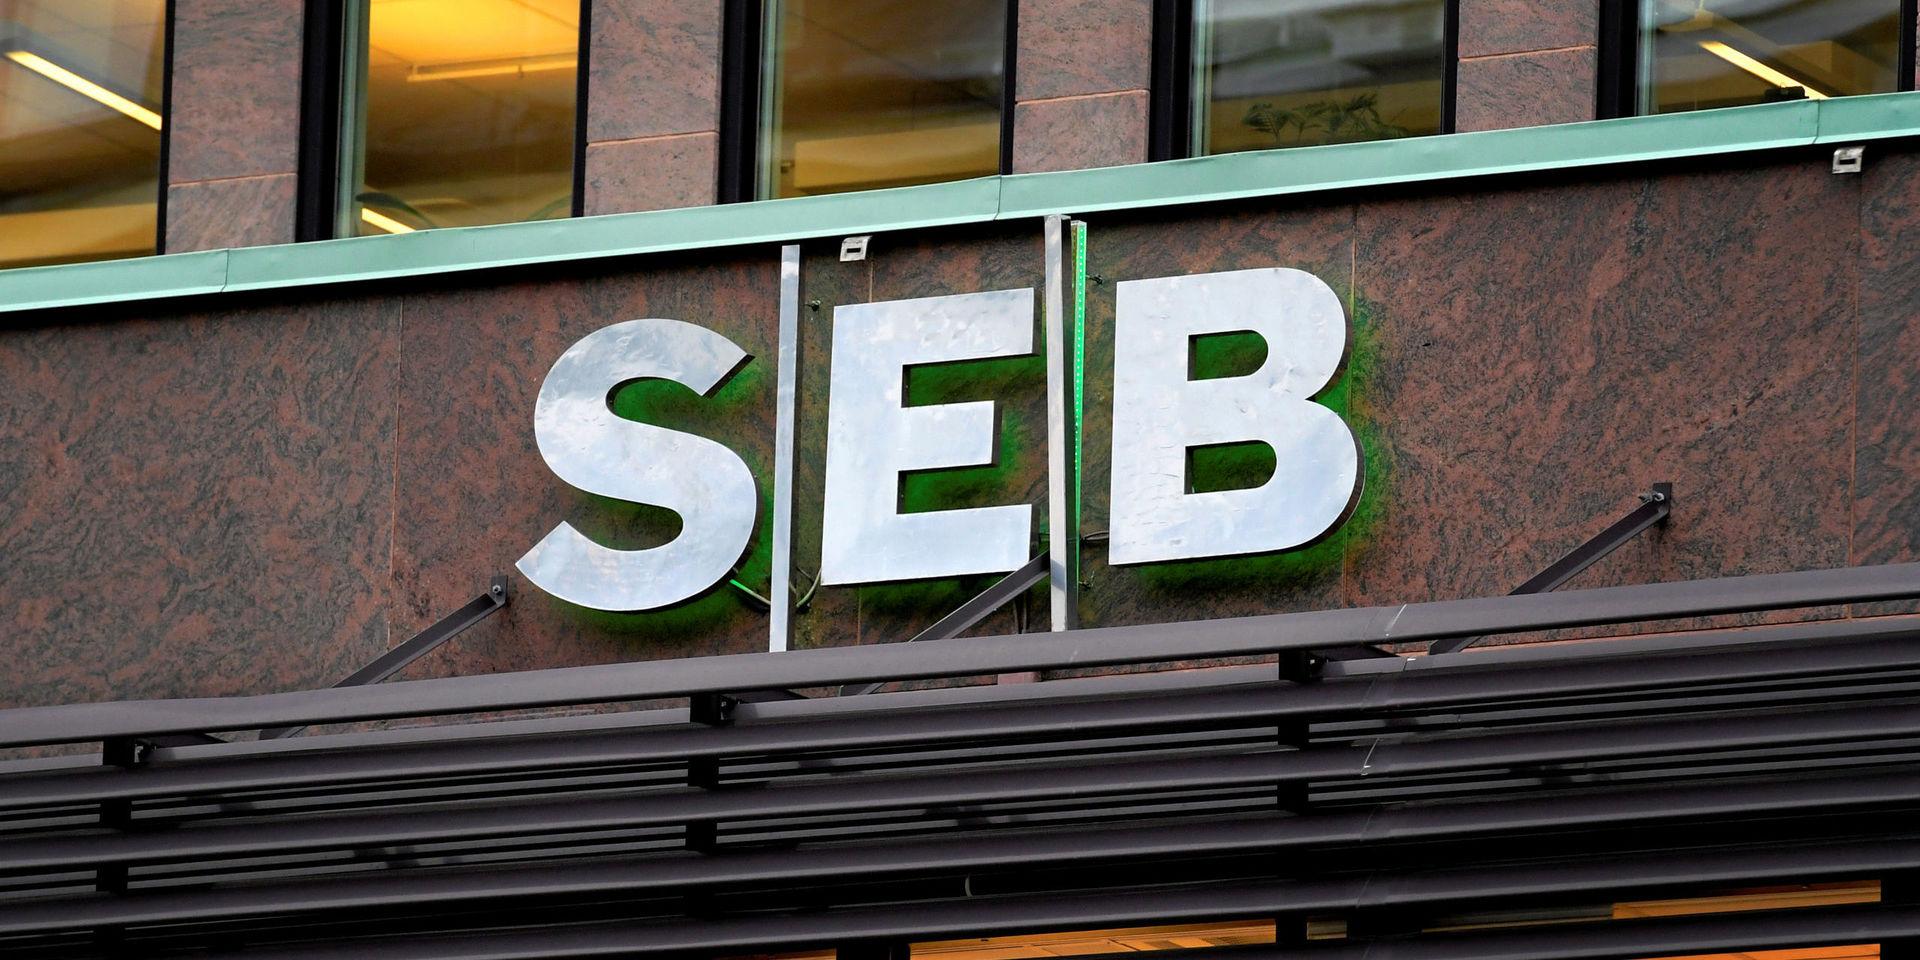 Anklagas. Banken SEB pekas ut som inblandade i en skandal som involverar stöld av skattemedel.